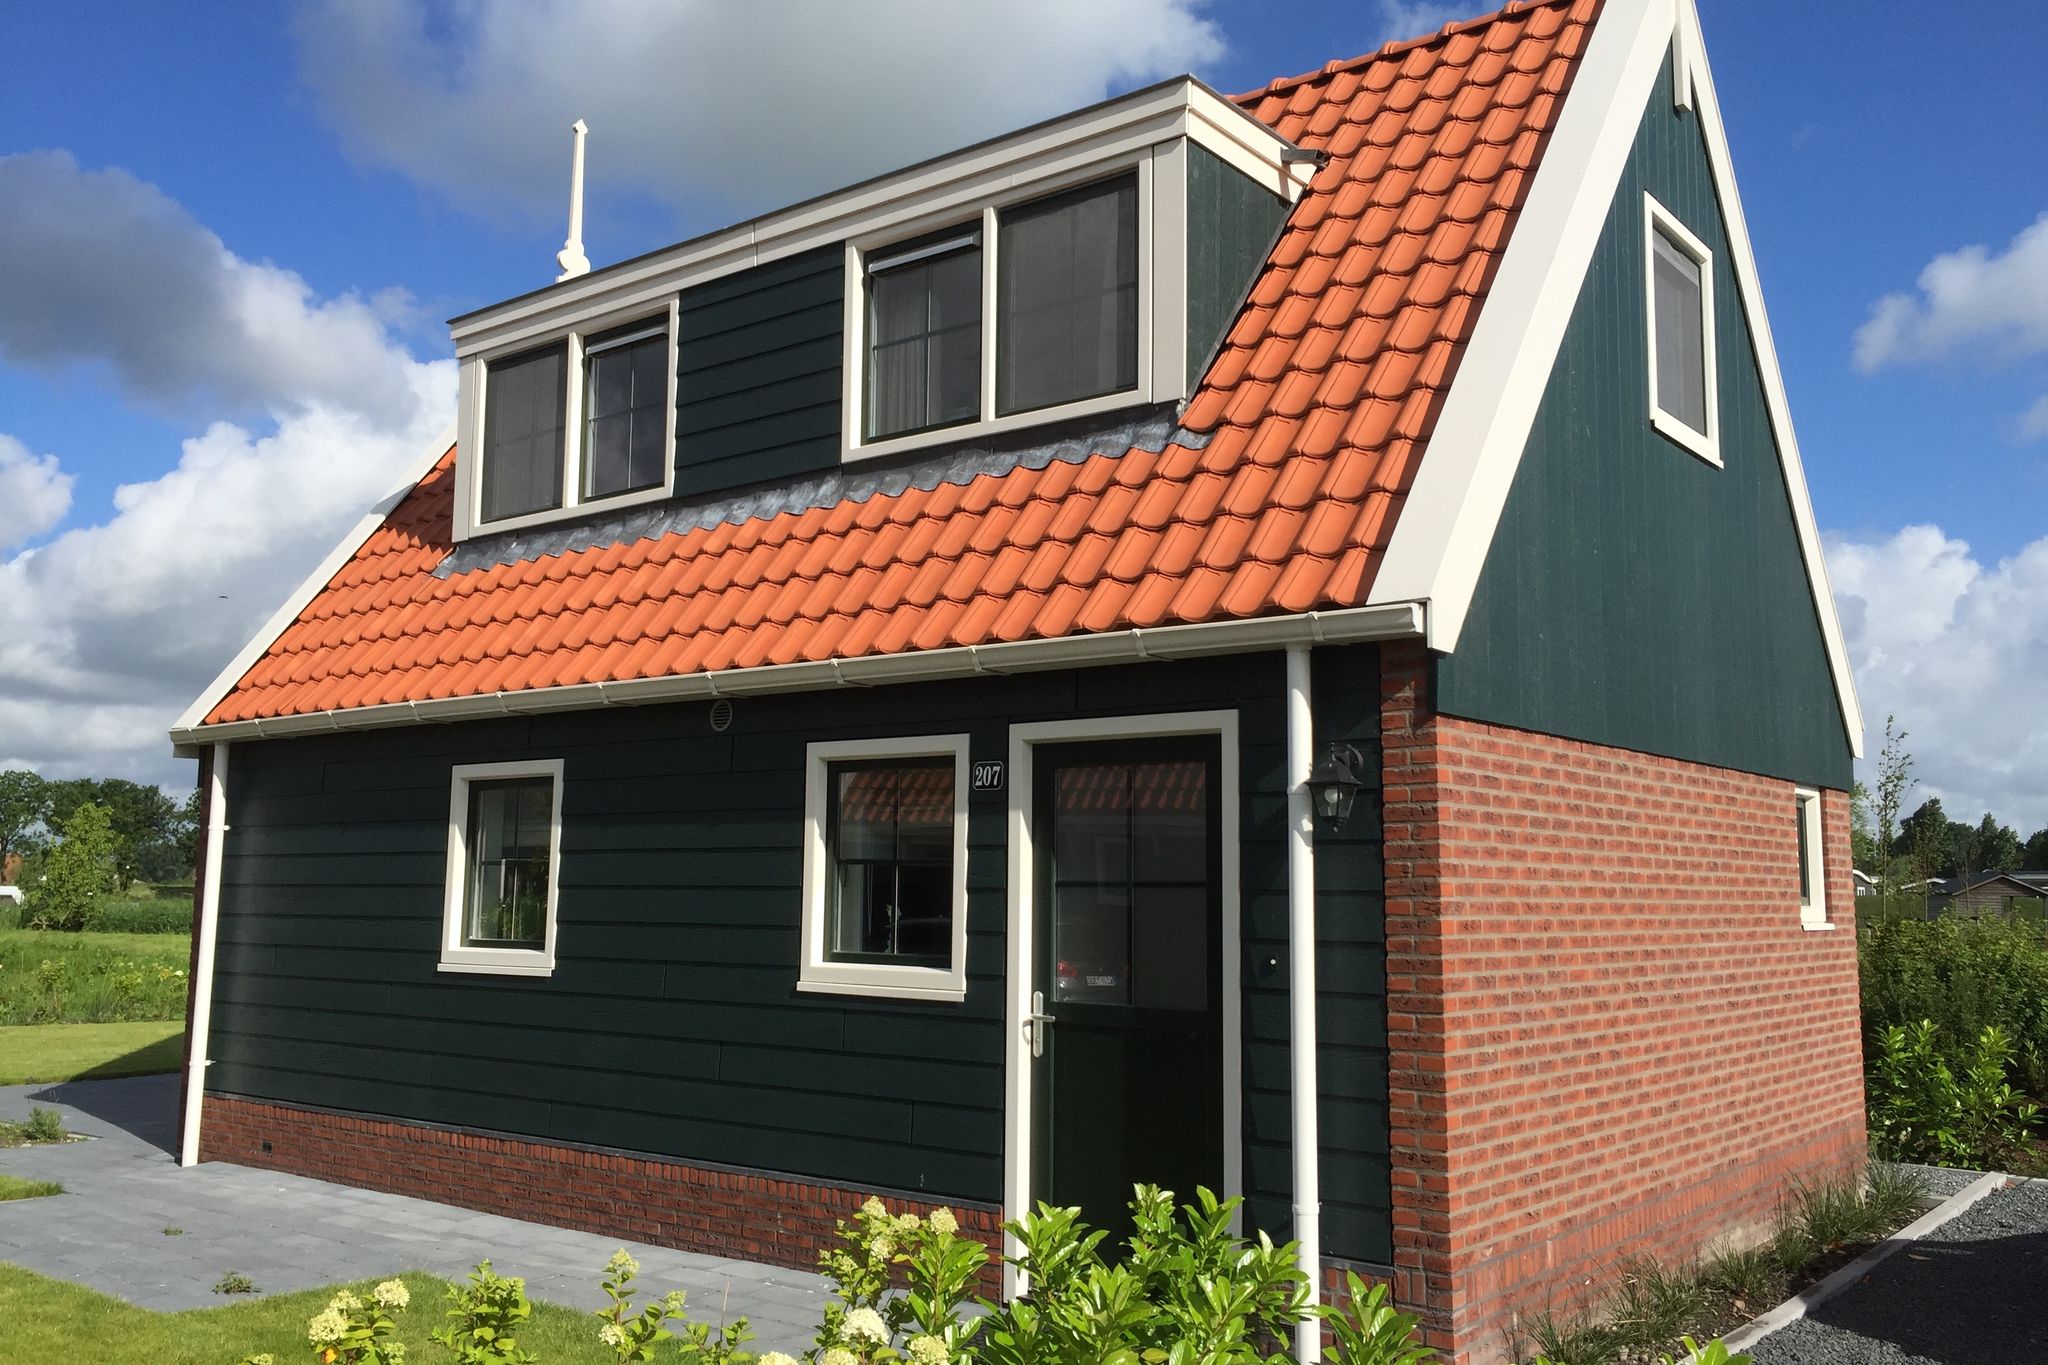 Ferienhaus im Zaanse-Stil, 15 km. von Alkmaar entfernt.